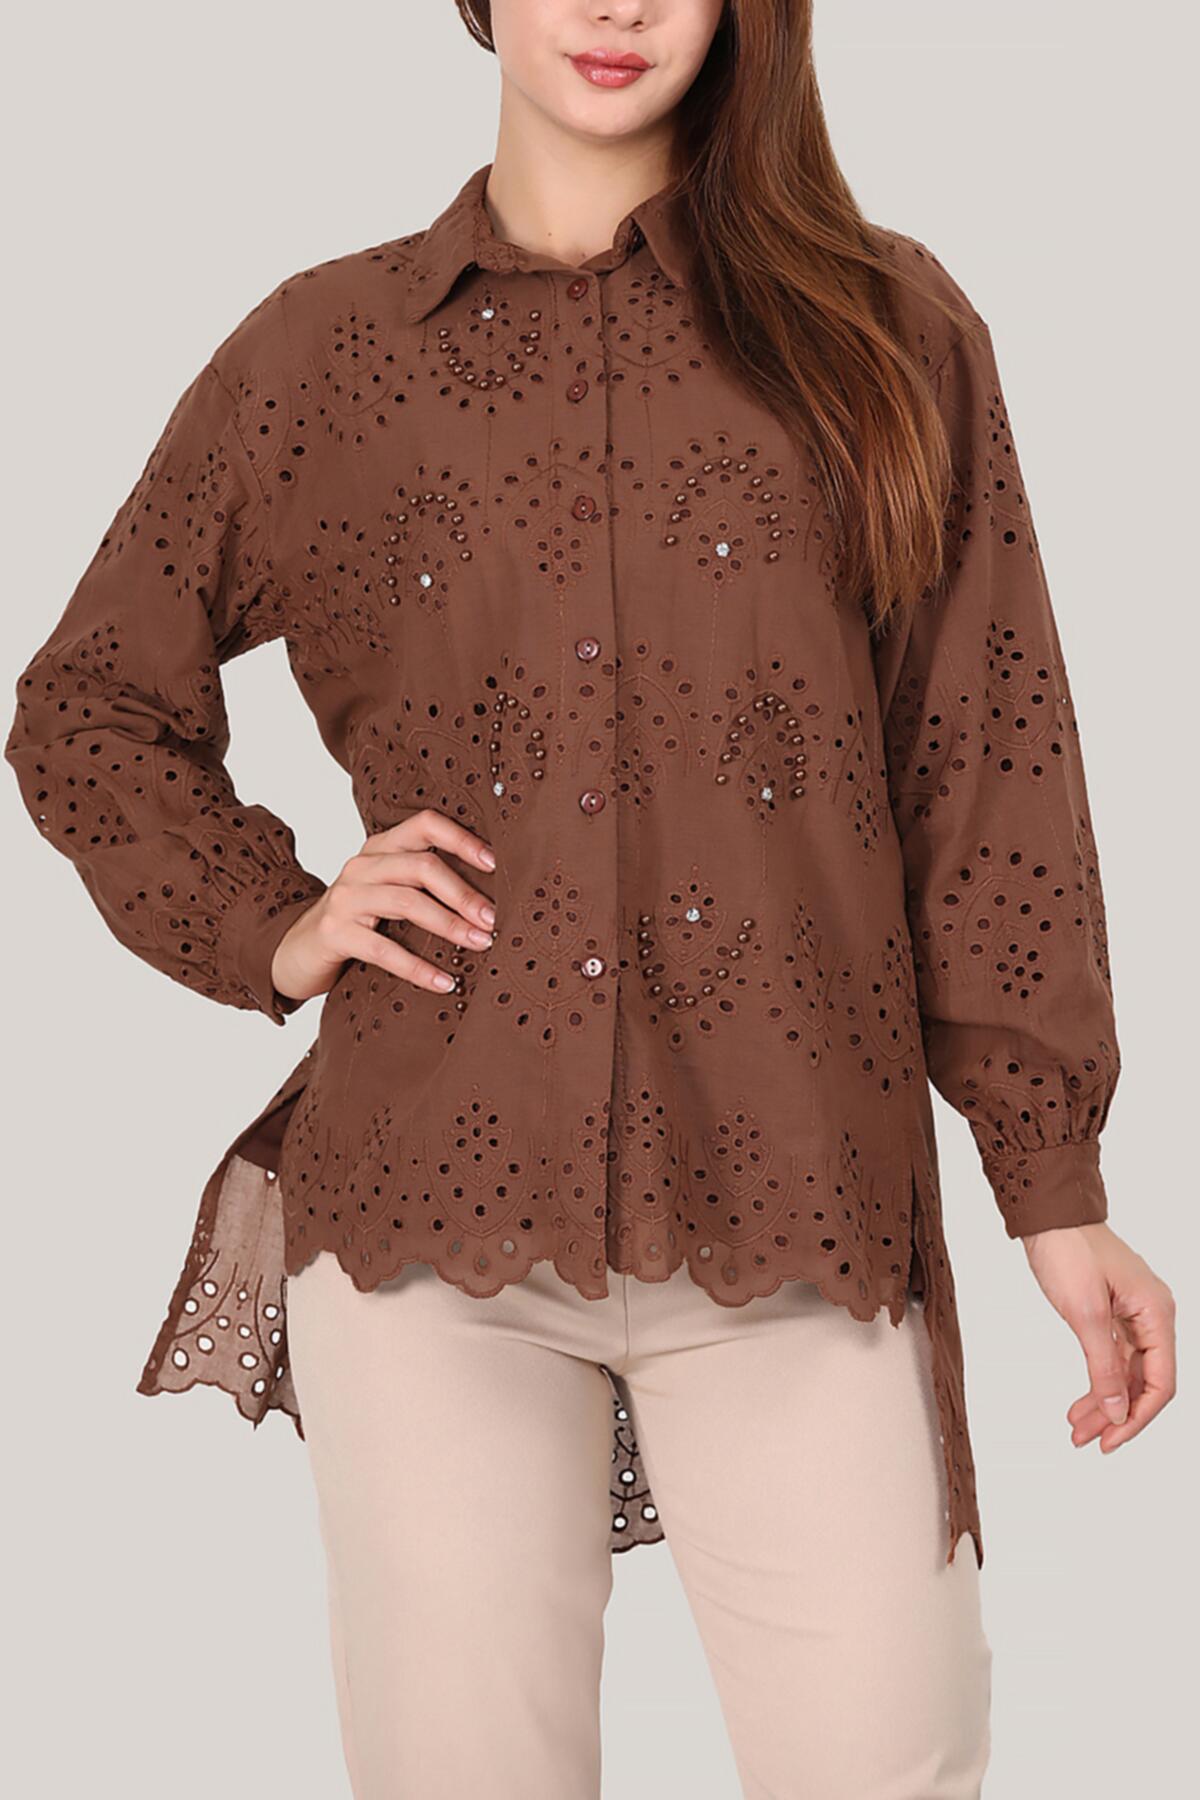 Kadın Gömlek Yaka Nakışlı Tunik Kahverengi | Patırtı